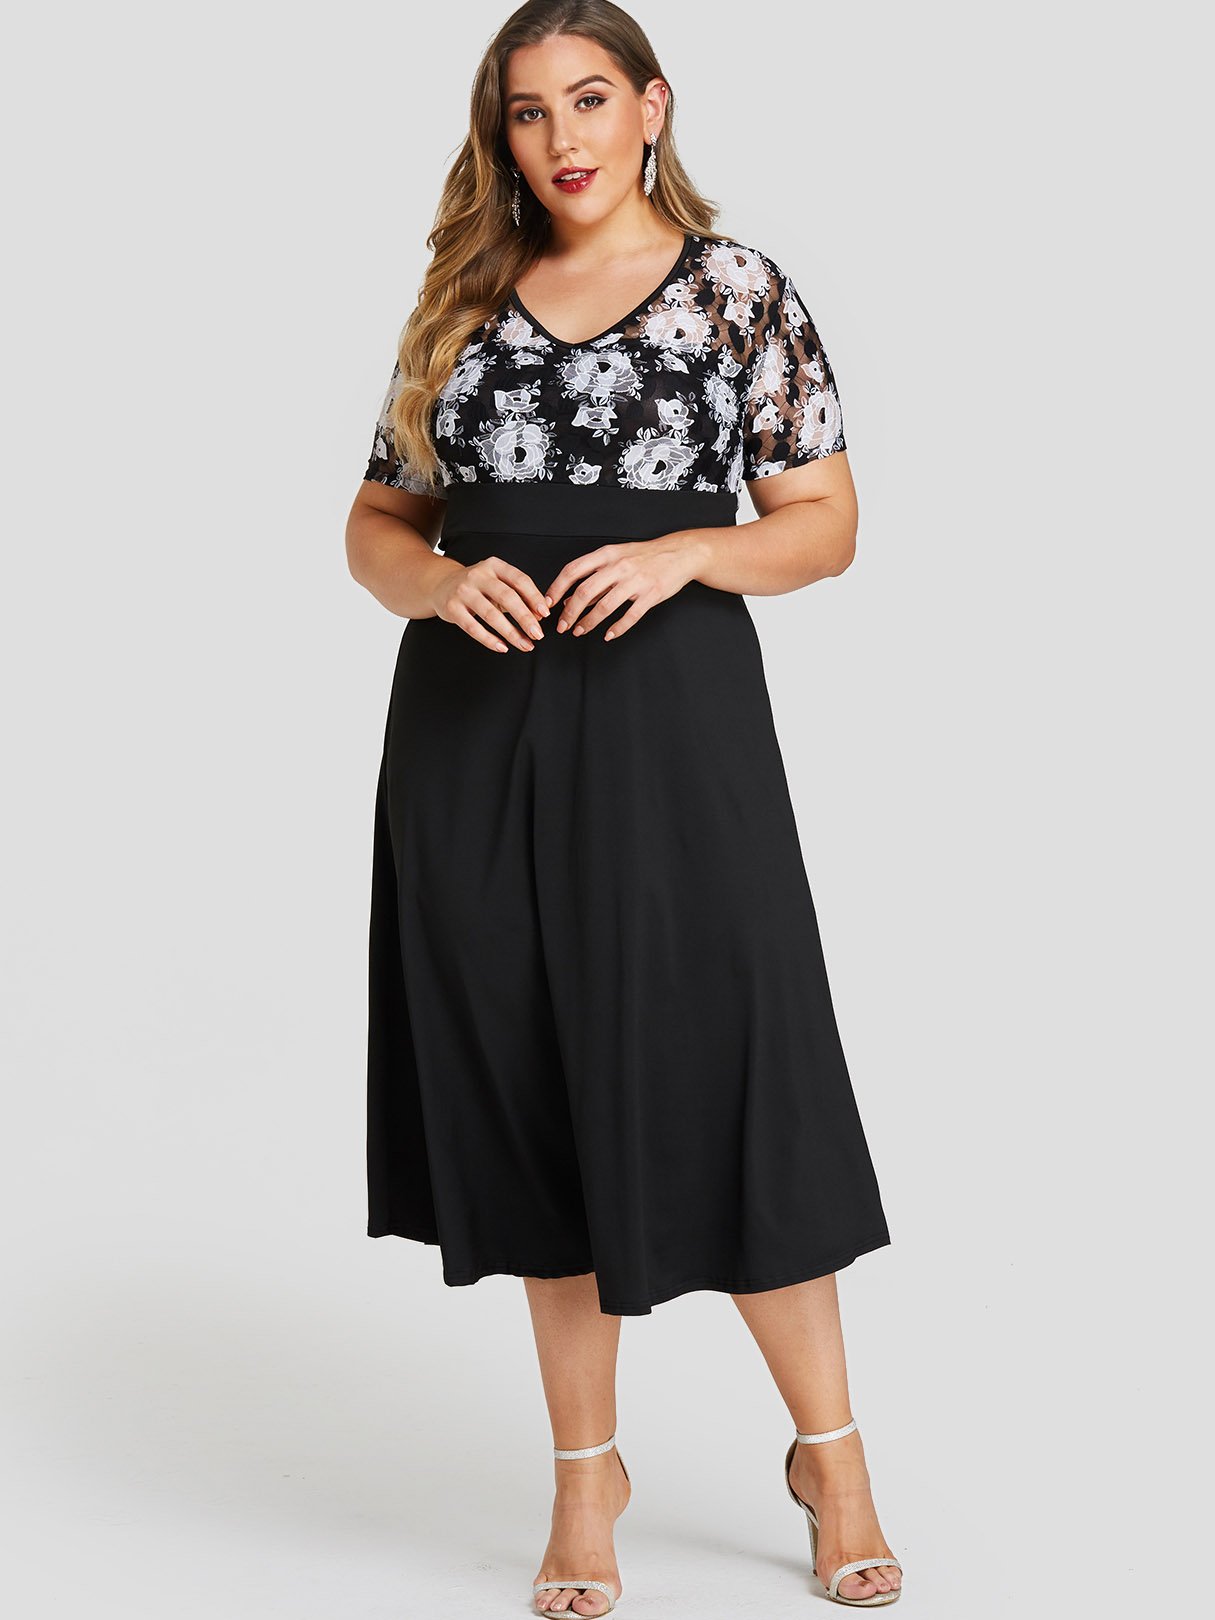 Wholesale V-Neck Floral Print Lace Short Sleeve Plus Size Dress